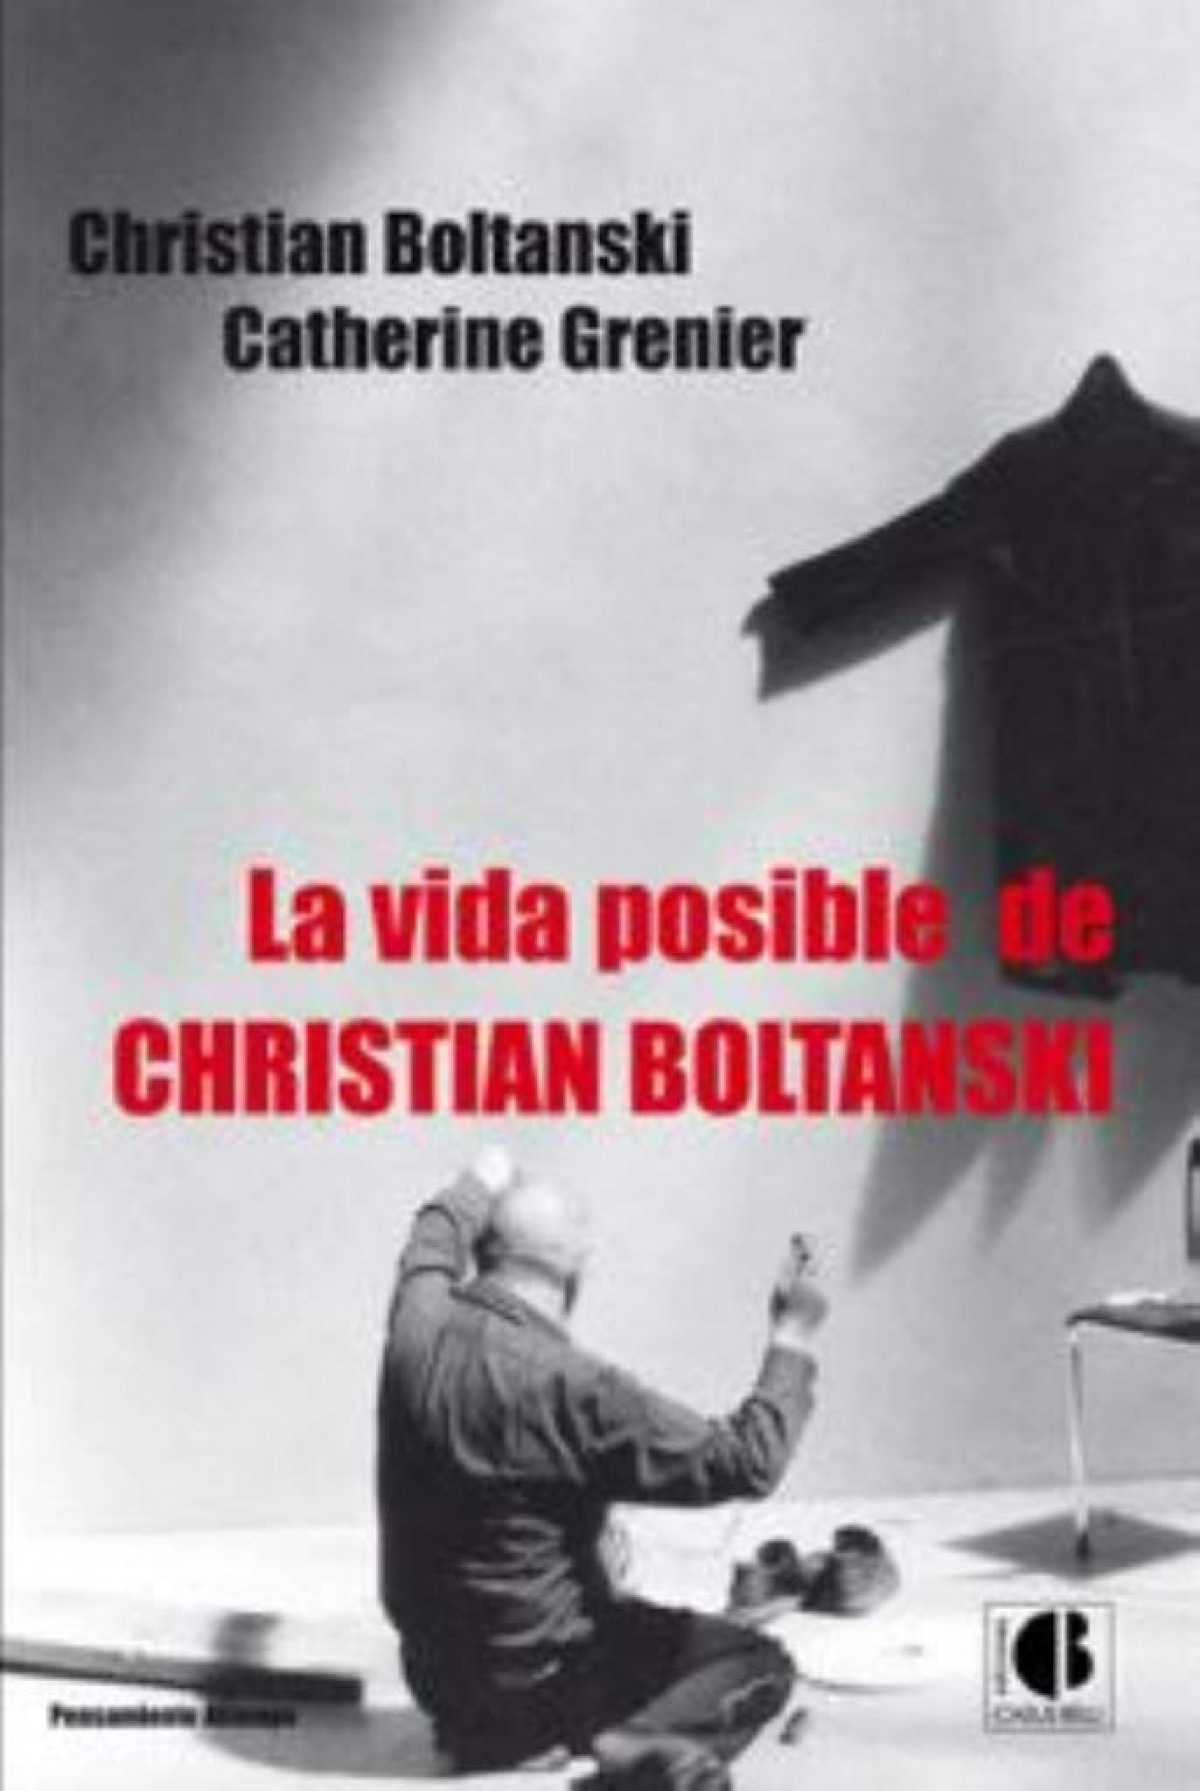 La vida posible de Christian Boltanski - Boltanski, Christian / Grenier, Catherine